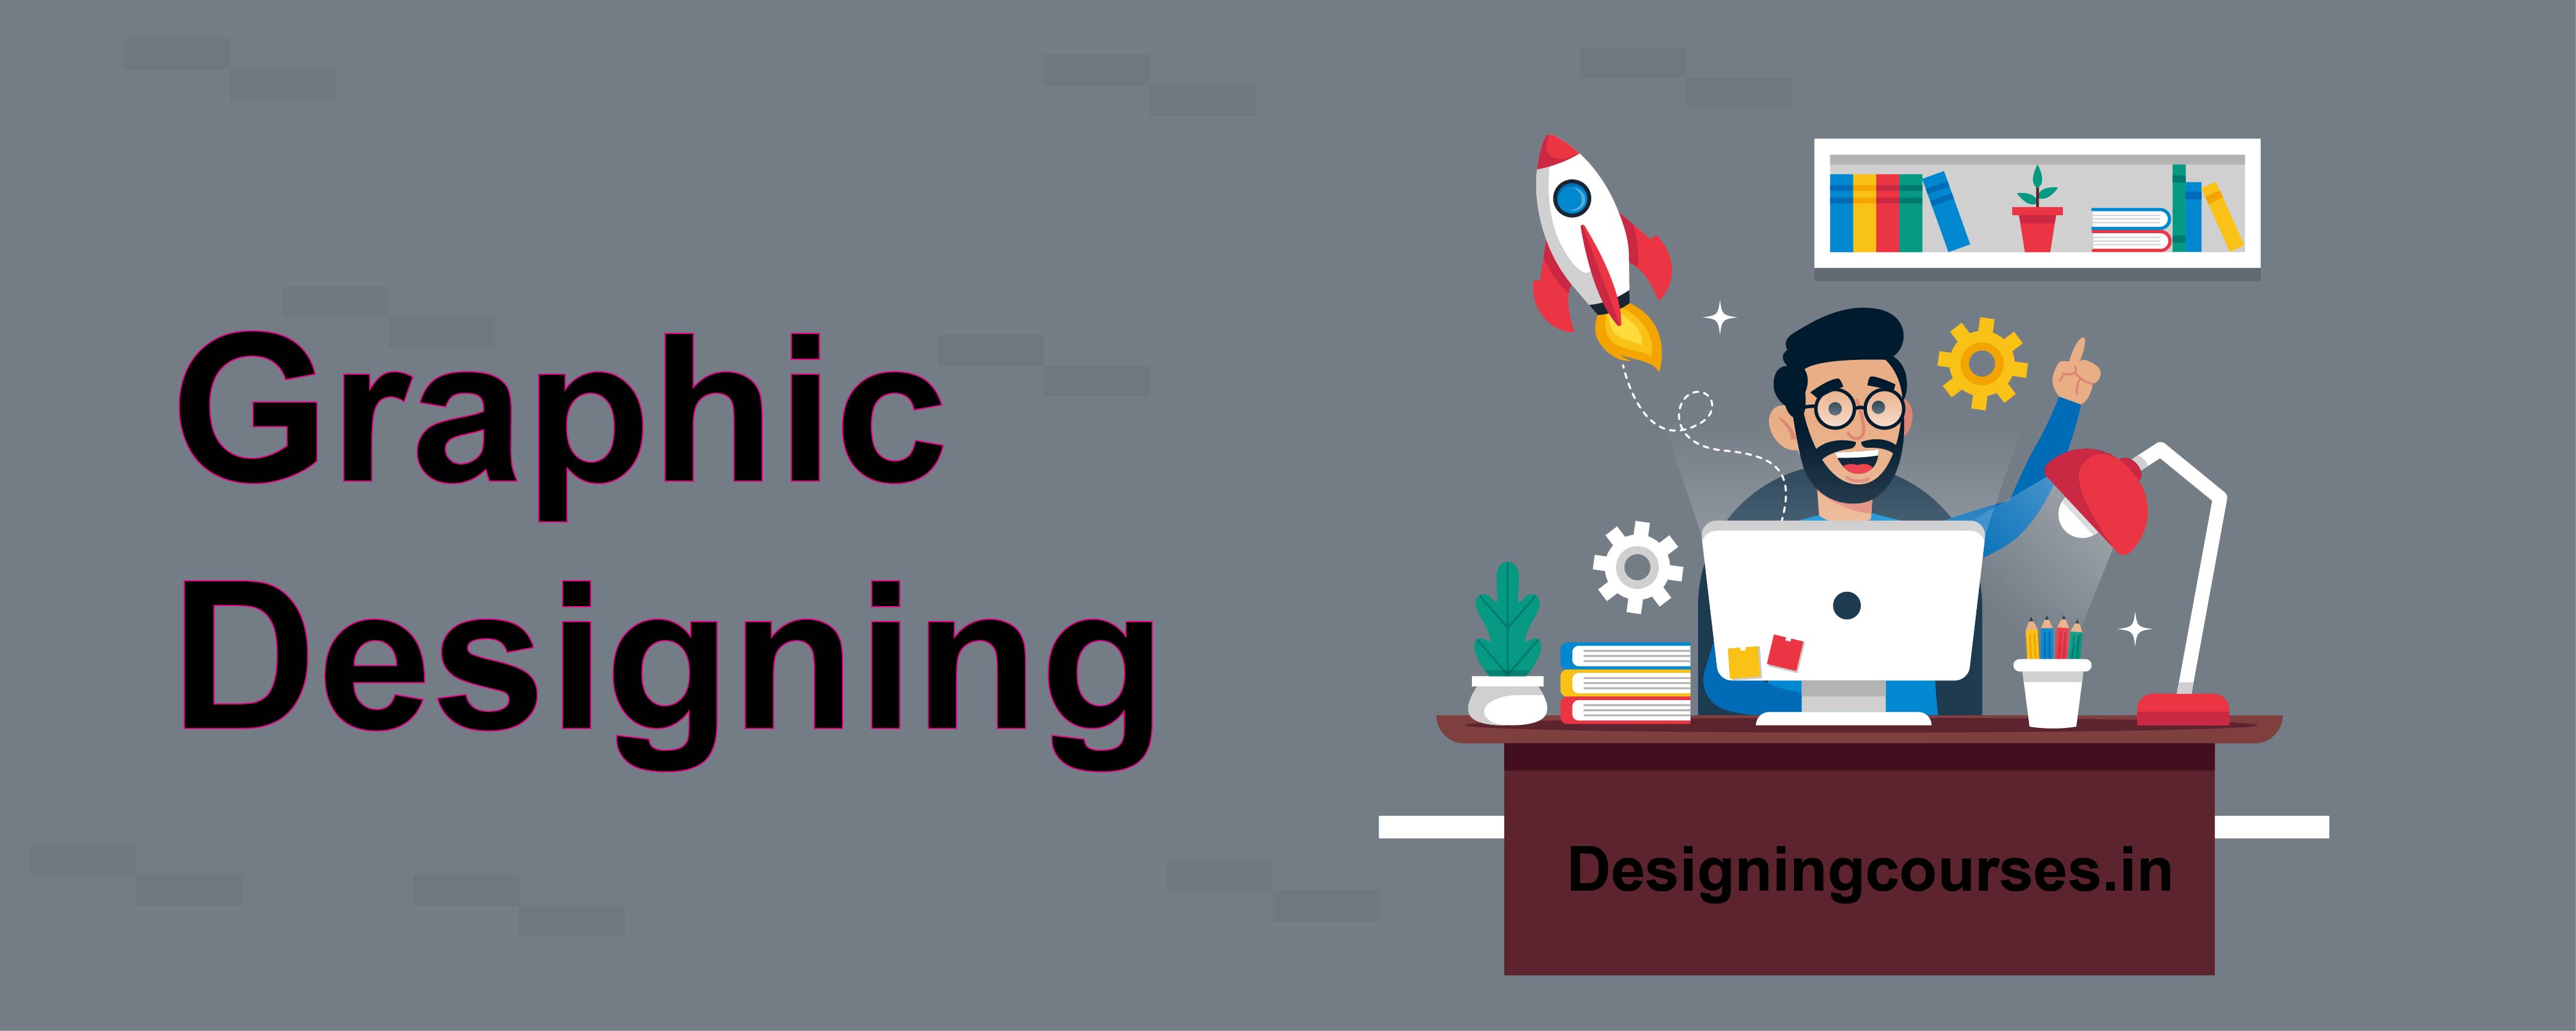 graphic-designing-courses-in-bangalore